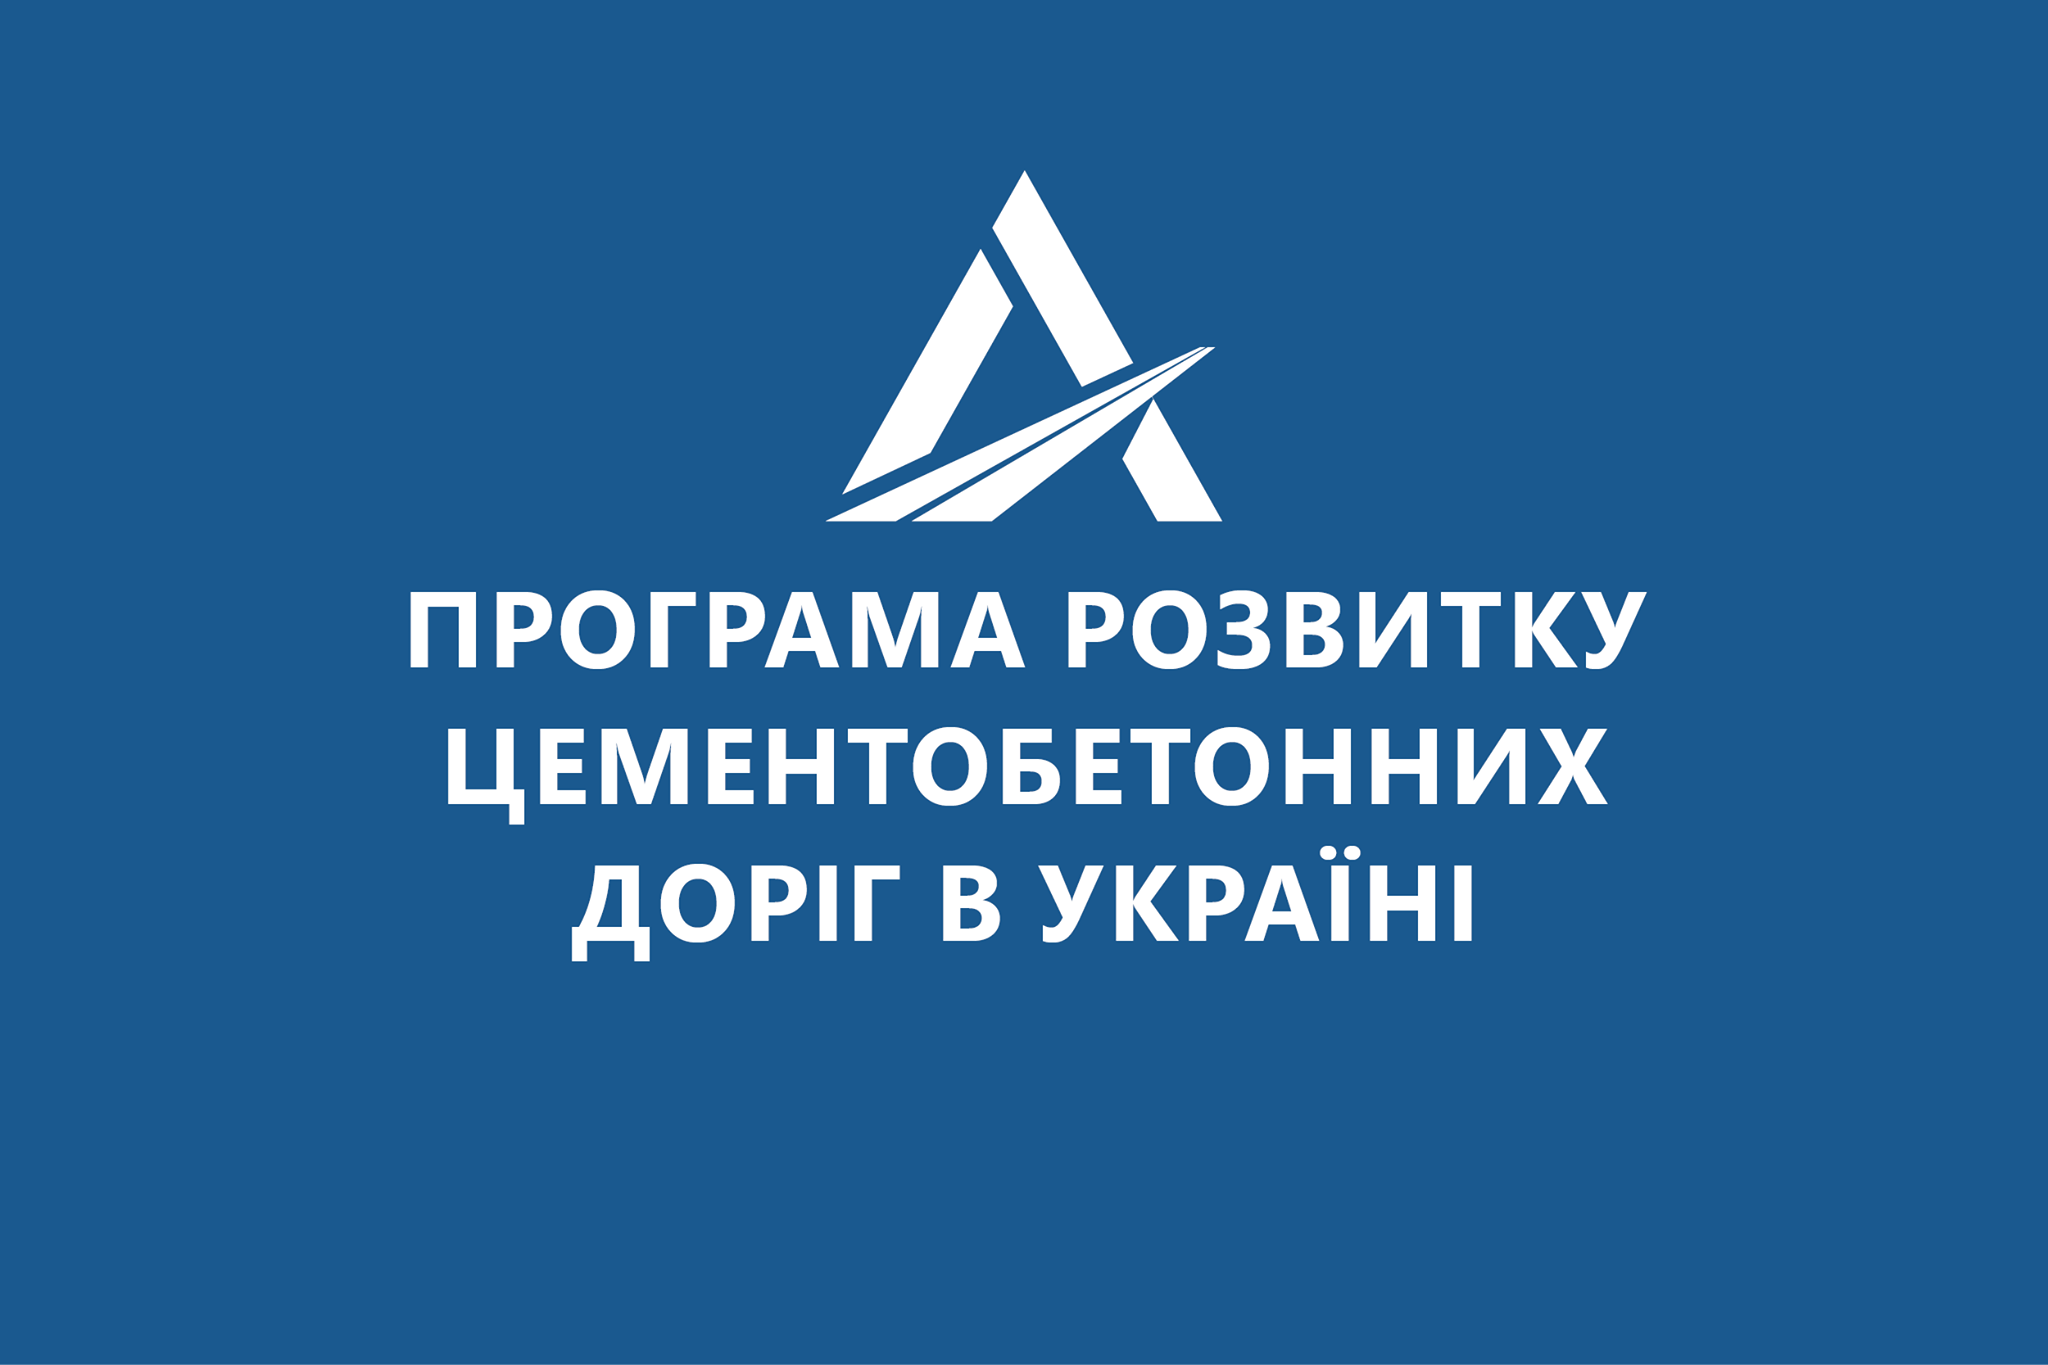 В Україні презетували програму розвитку цементобетонних доріг на 2021-2025 роки